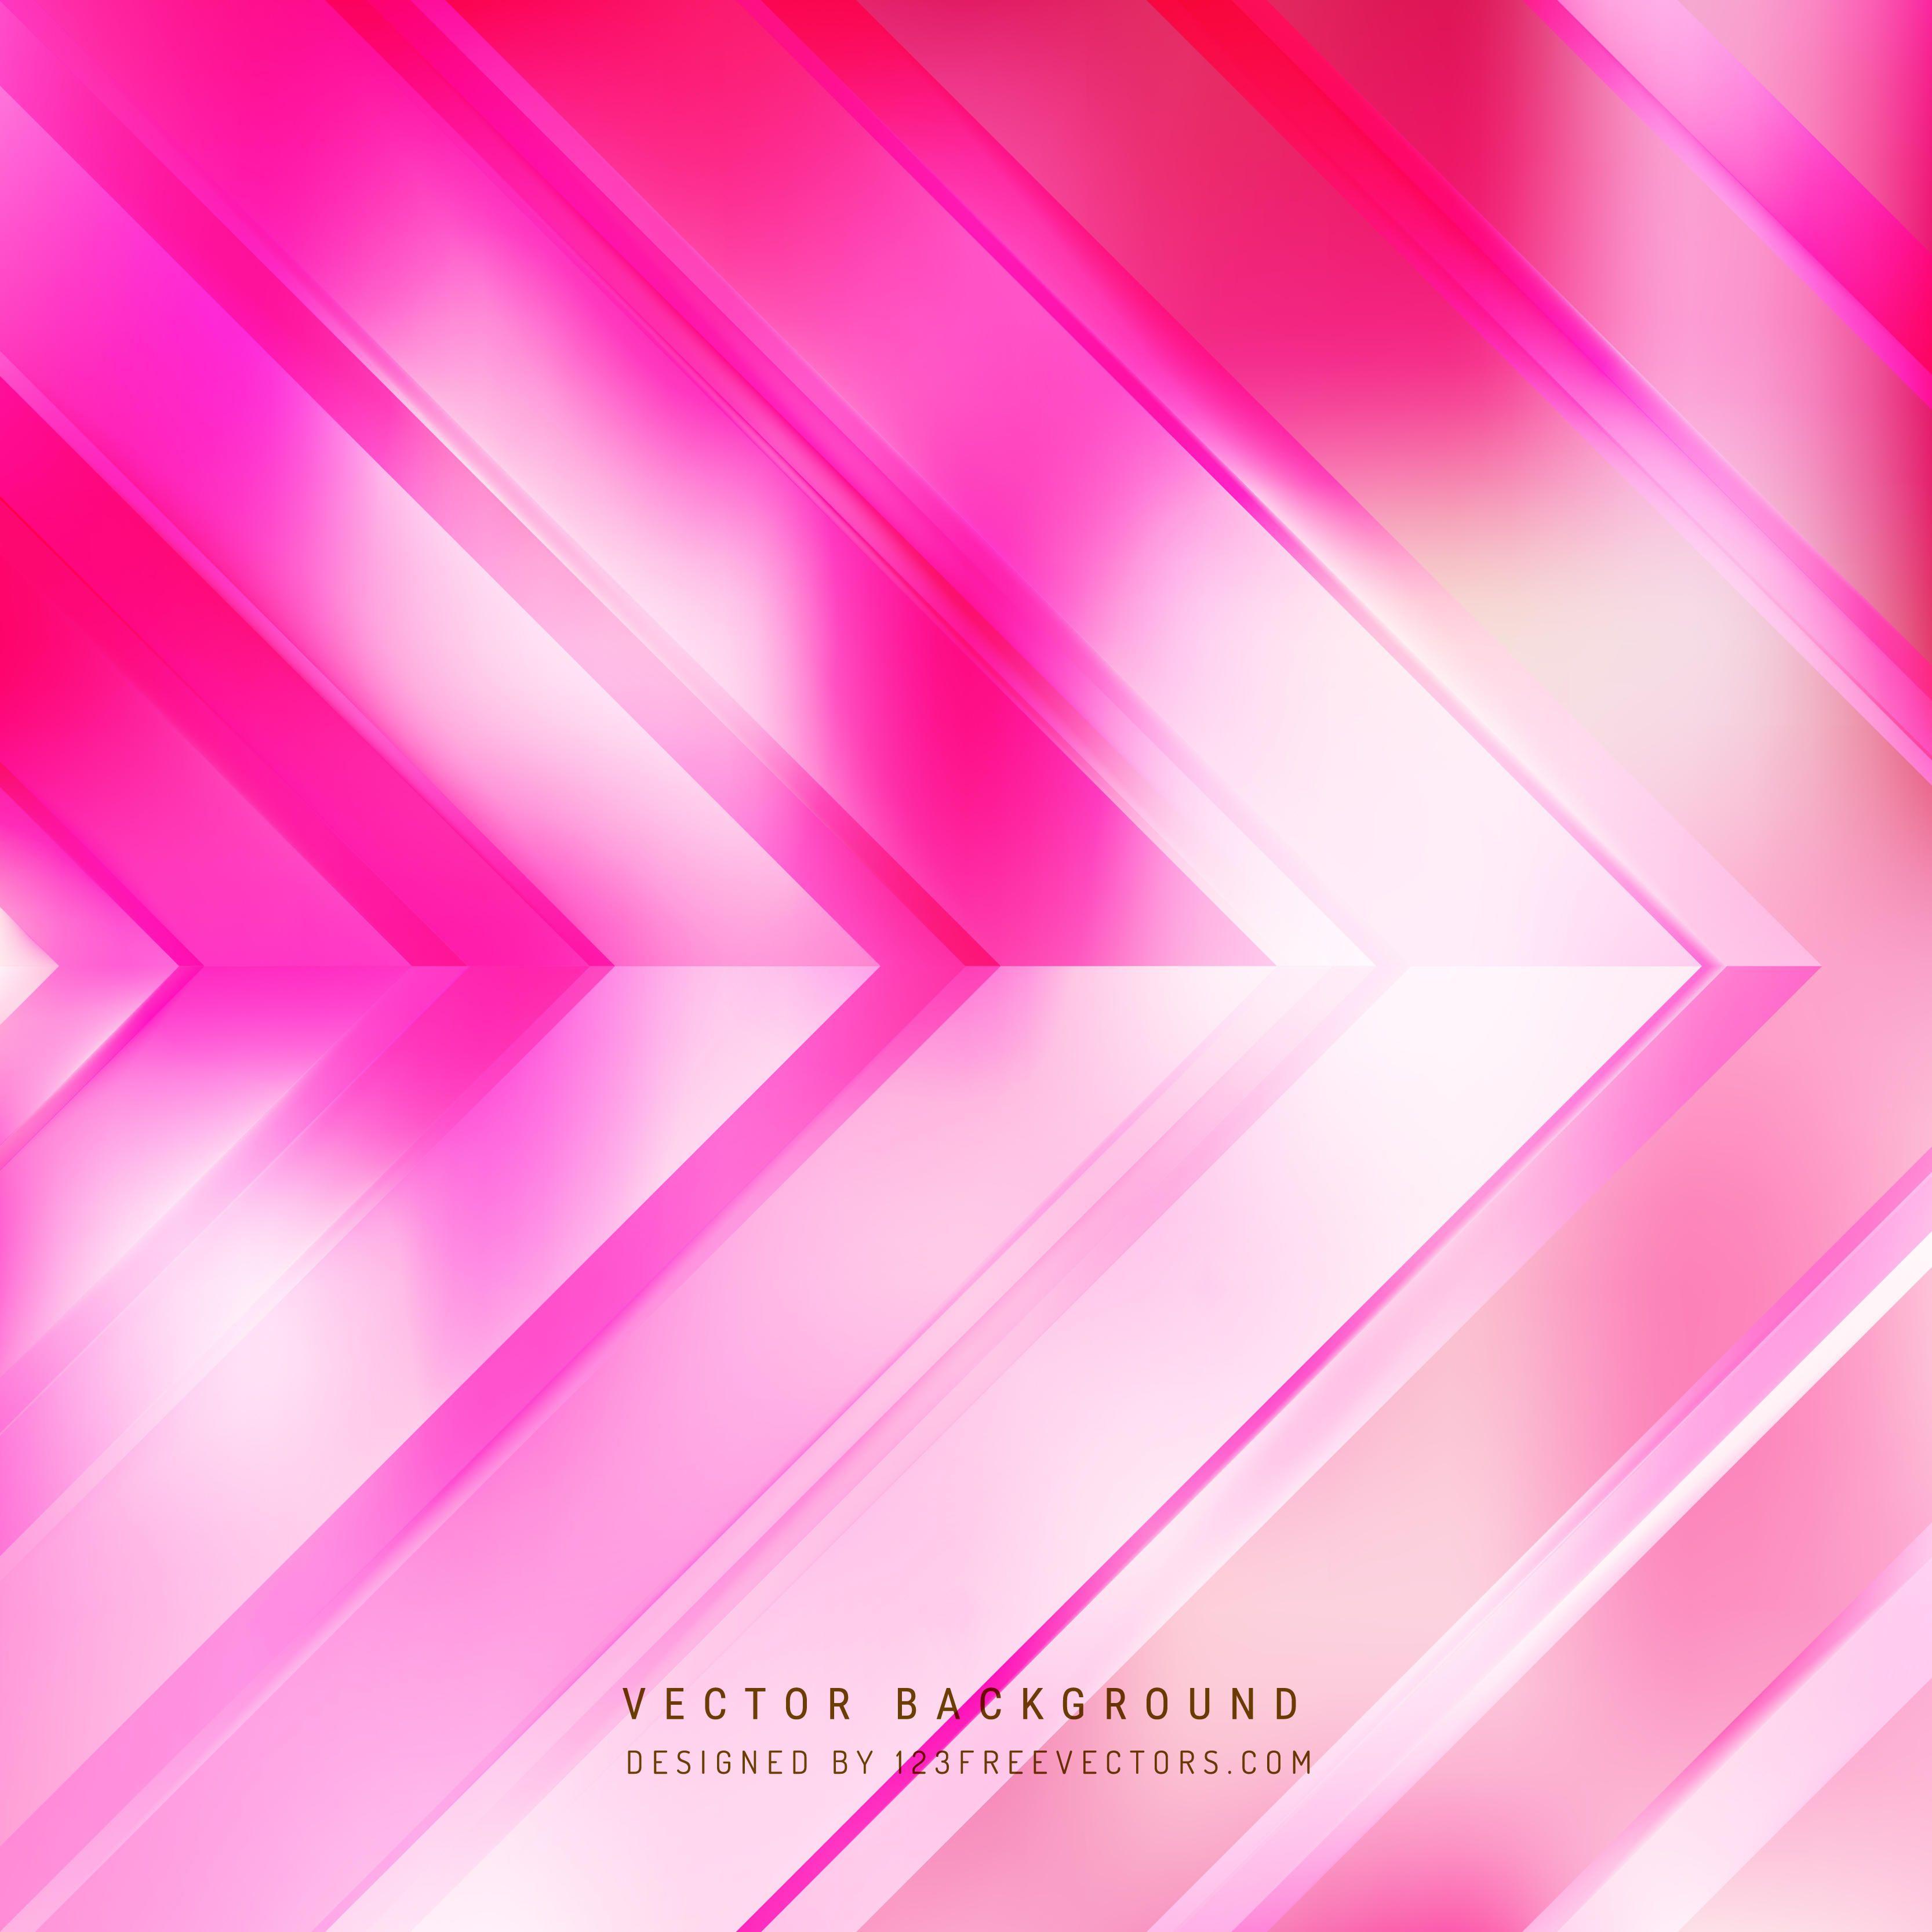 Pink Background Vectors. Download Free Vector Art & Graphics